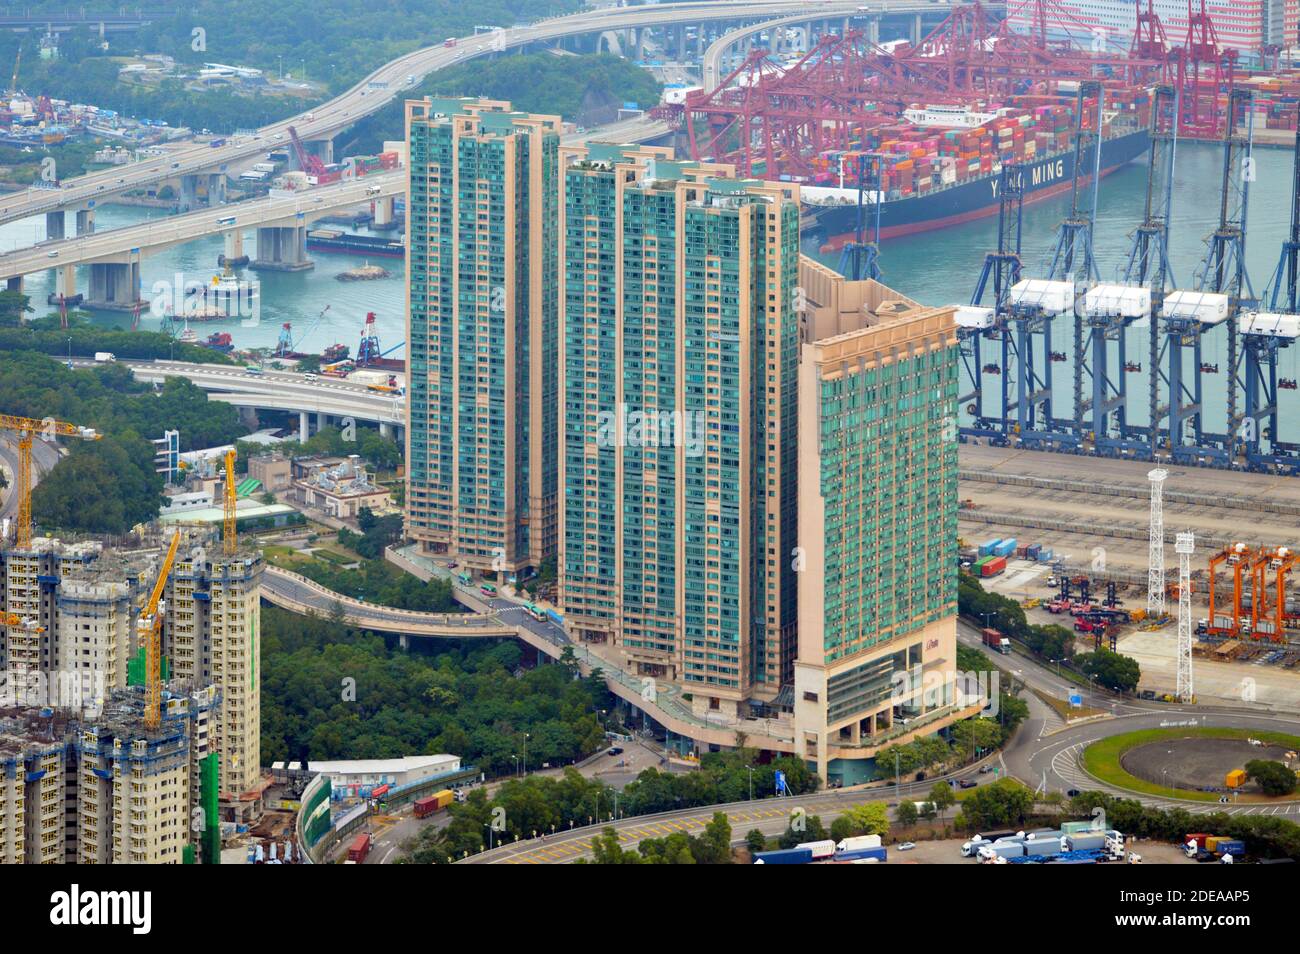 Complejo residencial y hotelero Rambler Crest, Tsing Yi, Hong Kong Foto de stock